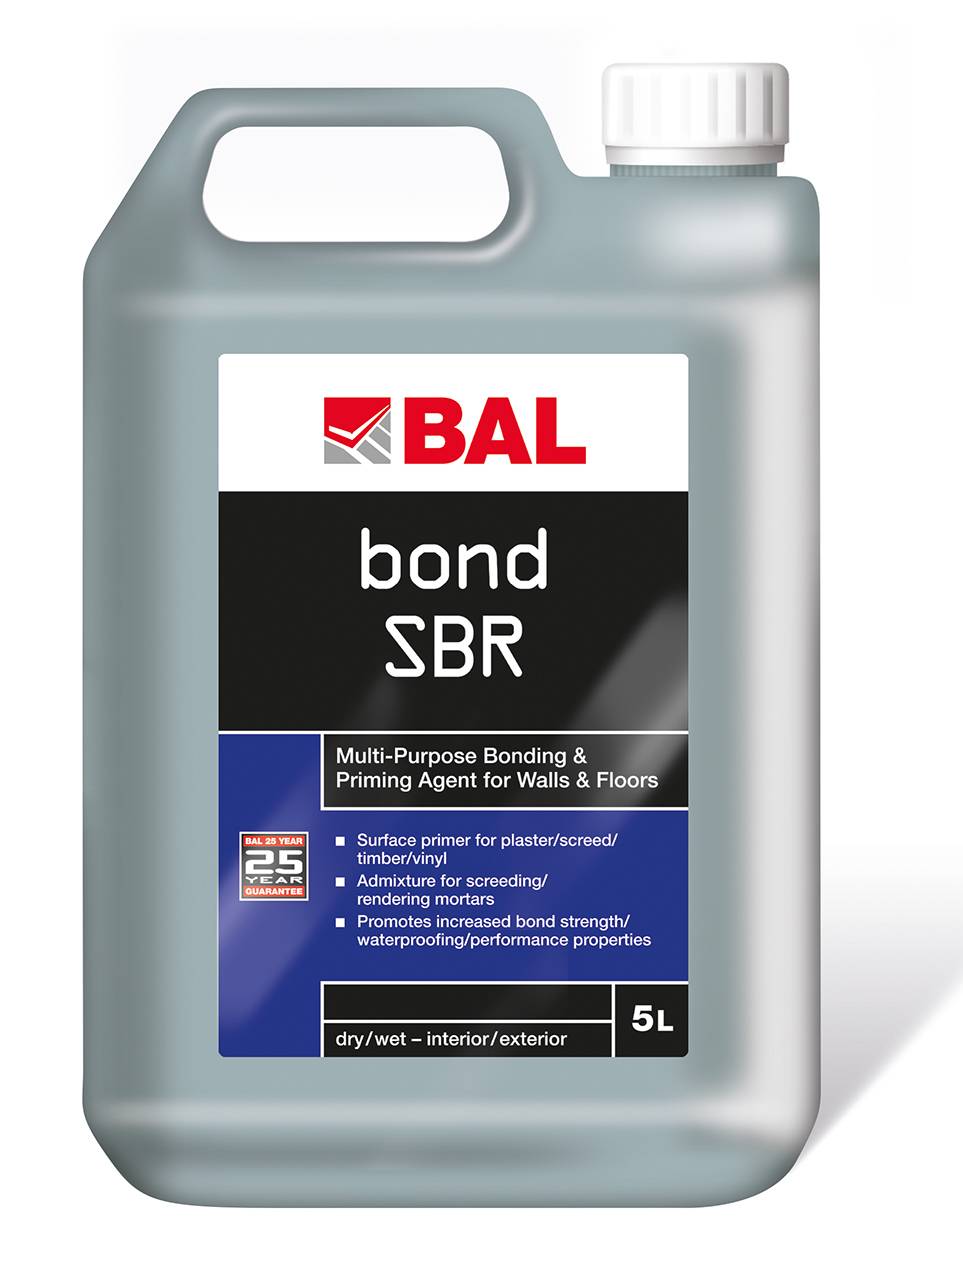 BAL Bond SBR